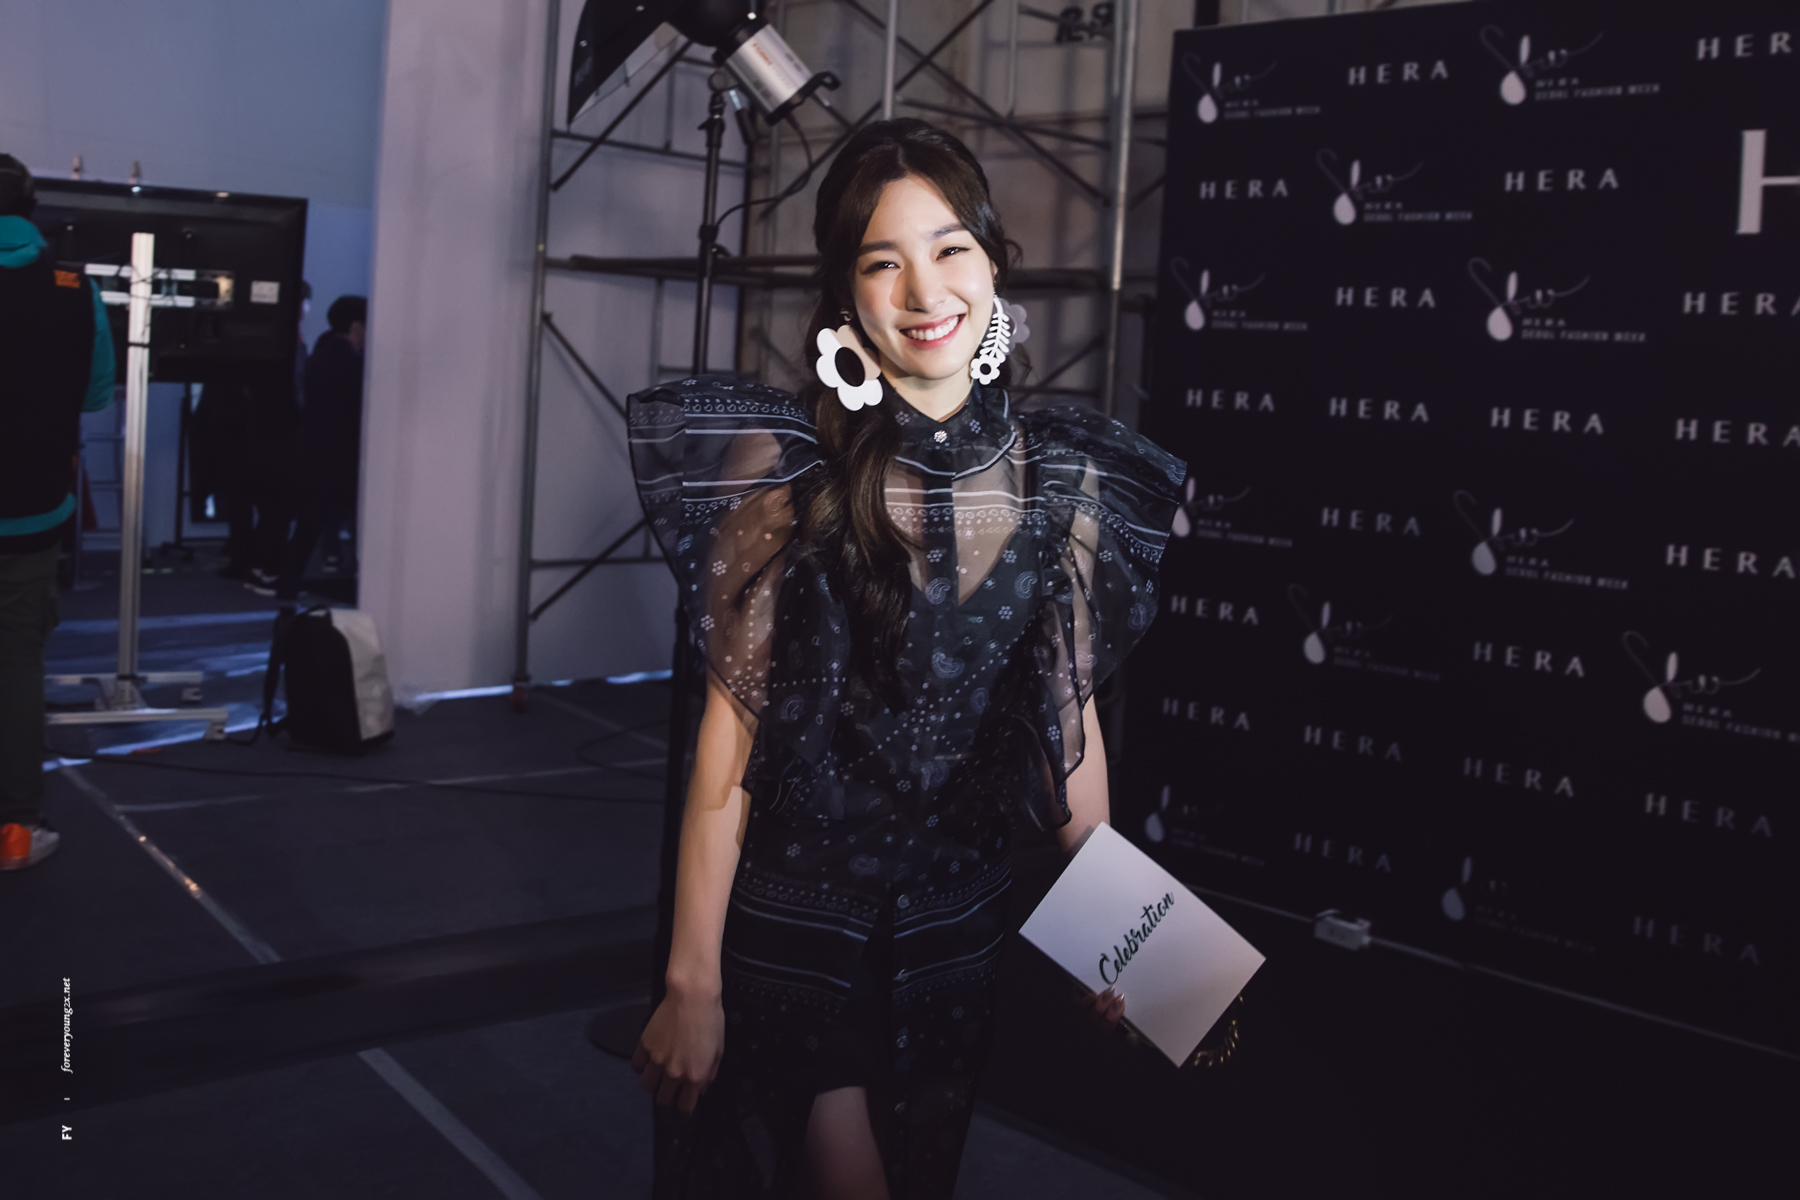 [PIC][28-03-2017]Tiffany và SeoHyun tham dự sự kiện ra mắt BST Thu - Đông của thương hiệu "FLEAMADONNA" trong khuôn khổ "2017 S/S HERA Seoul Fashion Week" vào chiều nay - Page 3 32889667973_babb1f206e_o